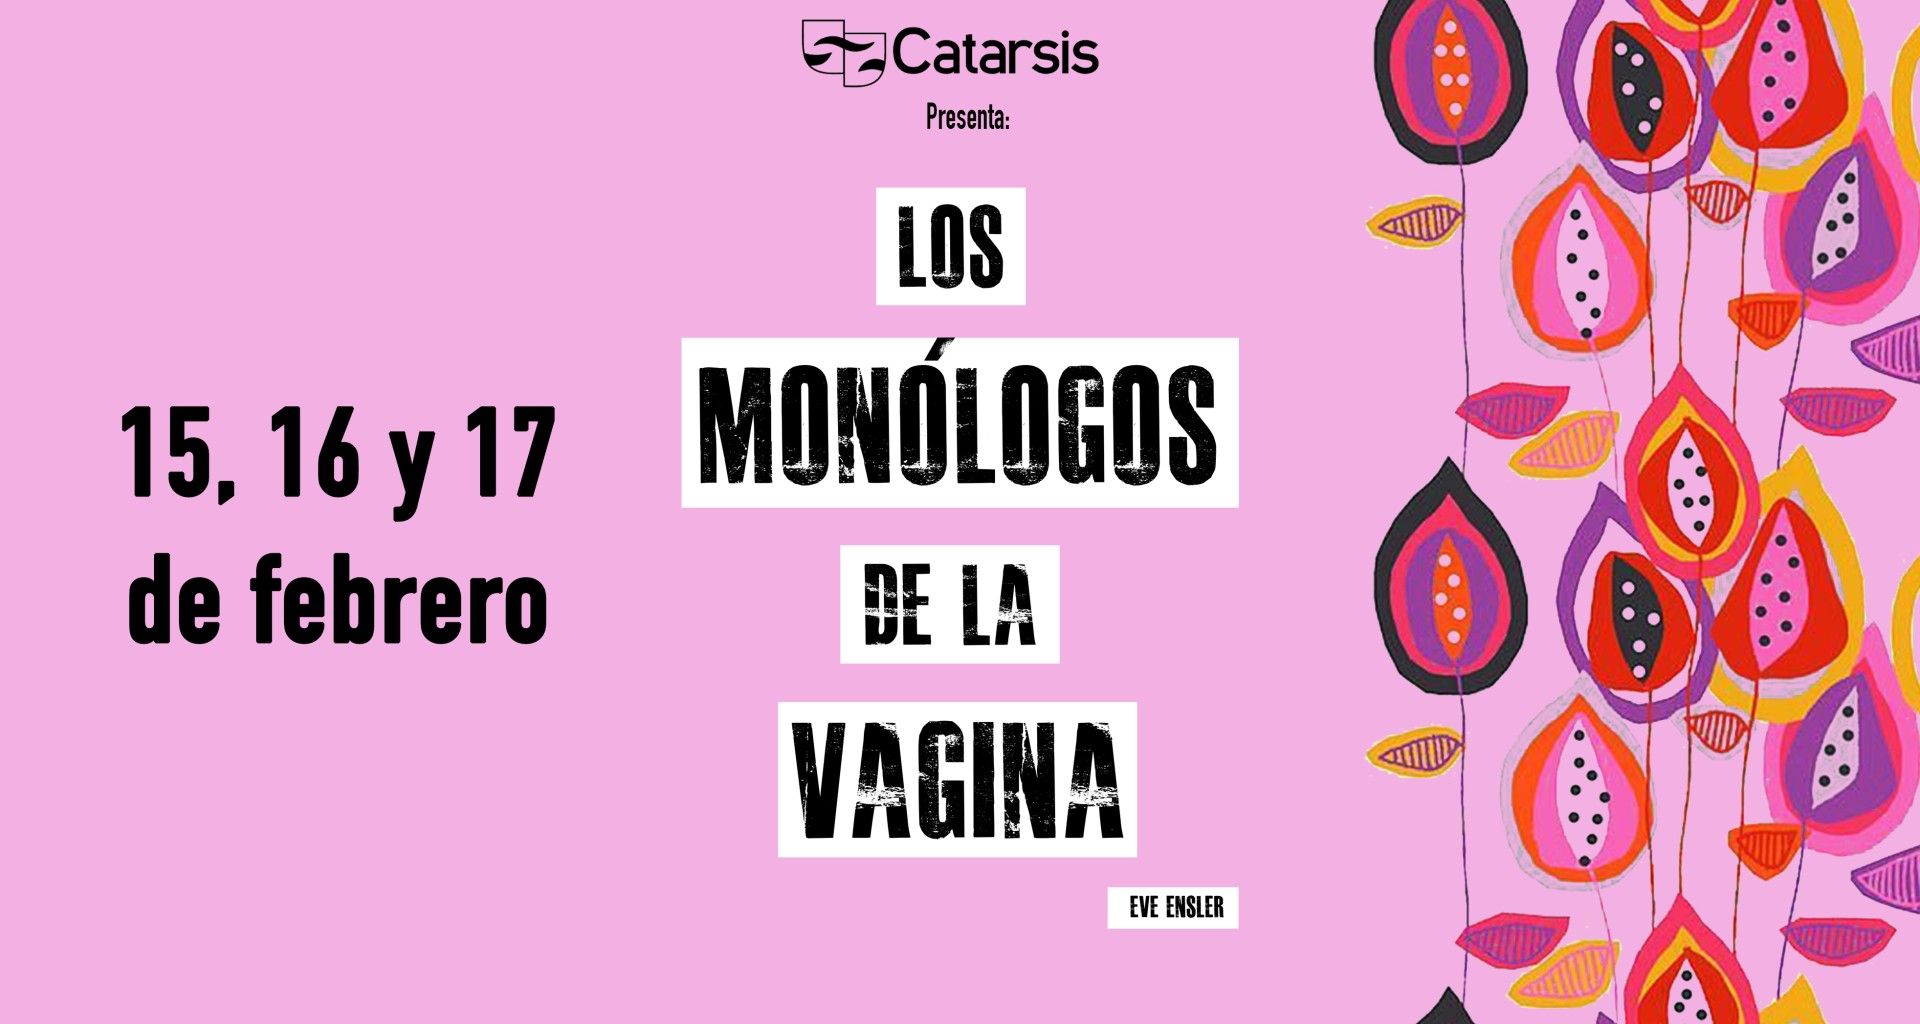 Monólogos de la vagina 2018